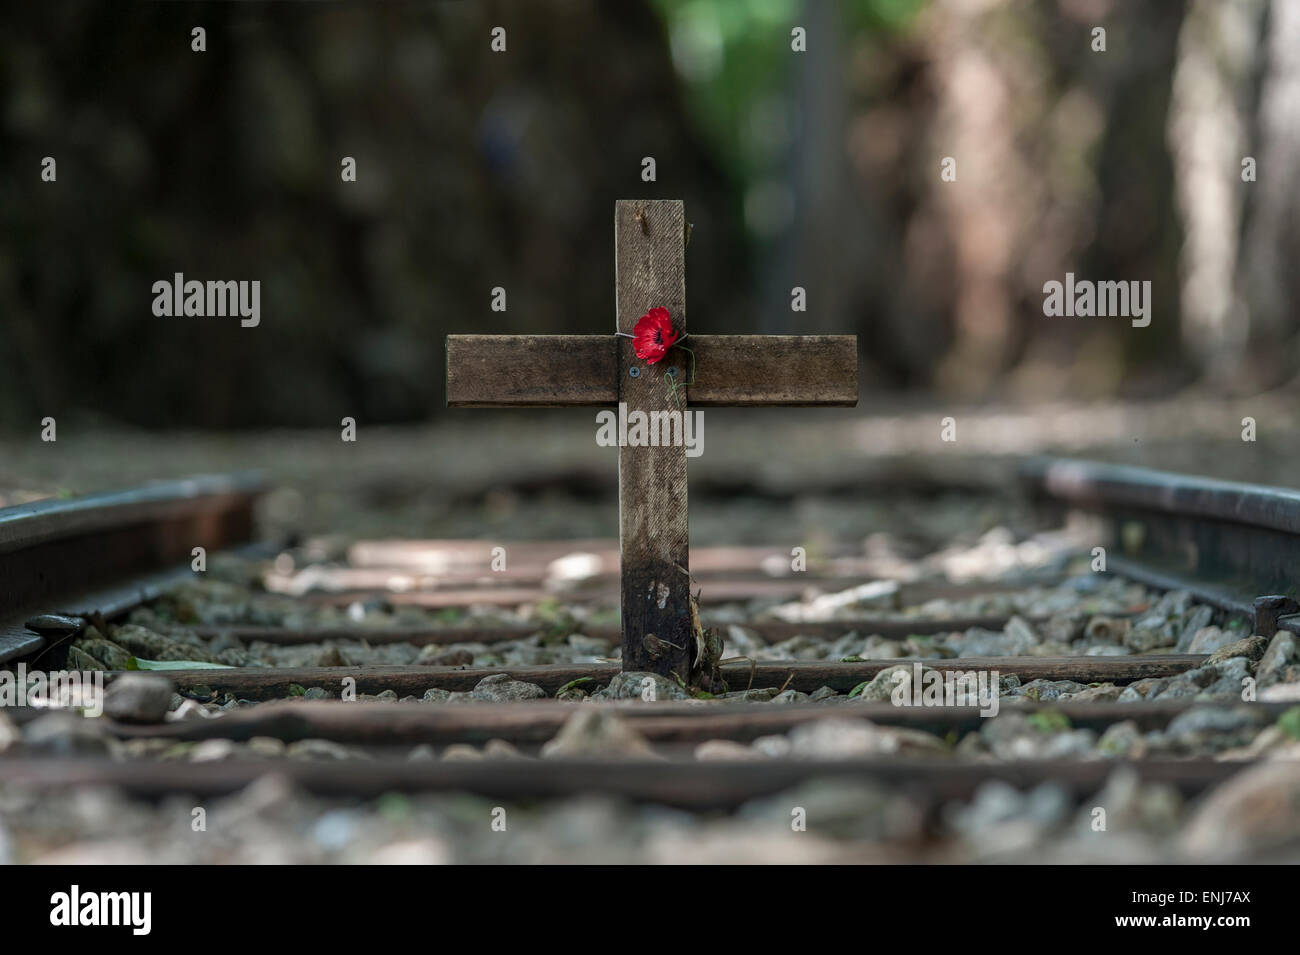 Croix du souvenir et de pavot à l'enfer passer le long de la Birmanie (Chemins de fer de la mort) Collines de Tenasserim. Thaïlande Banque D'Images